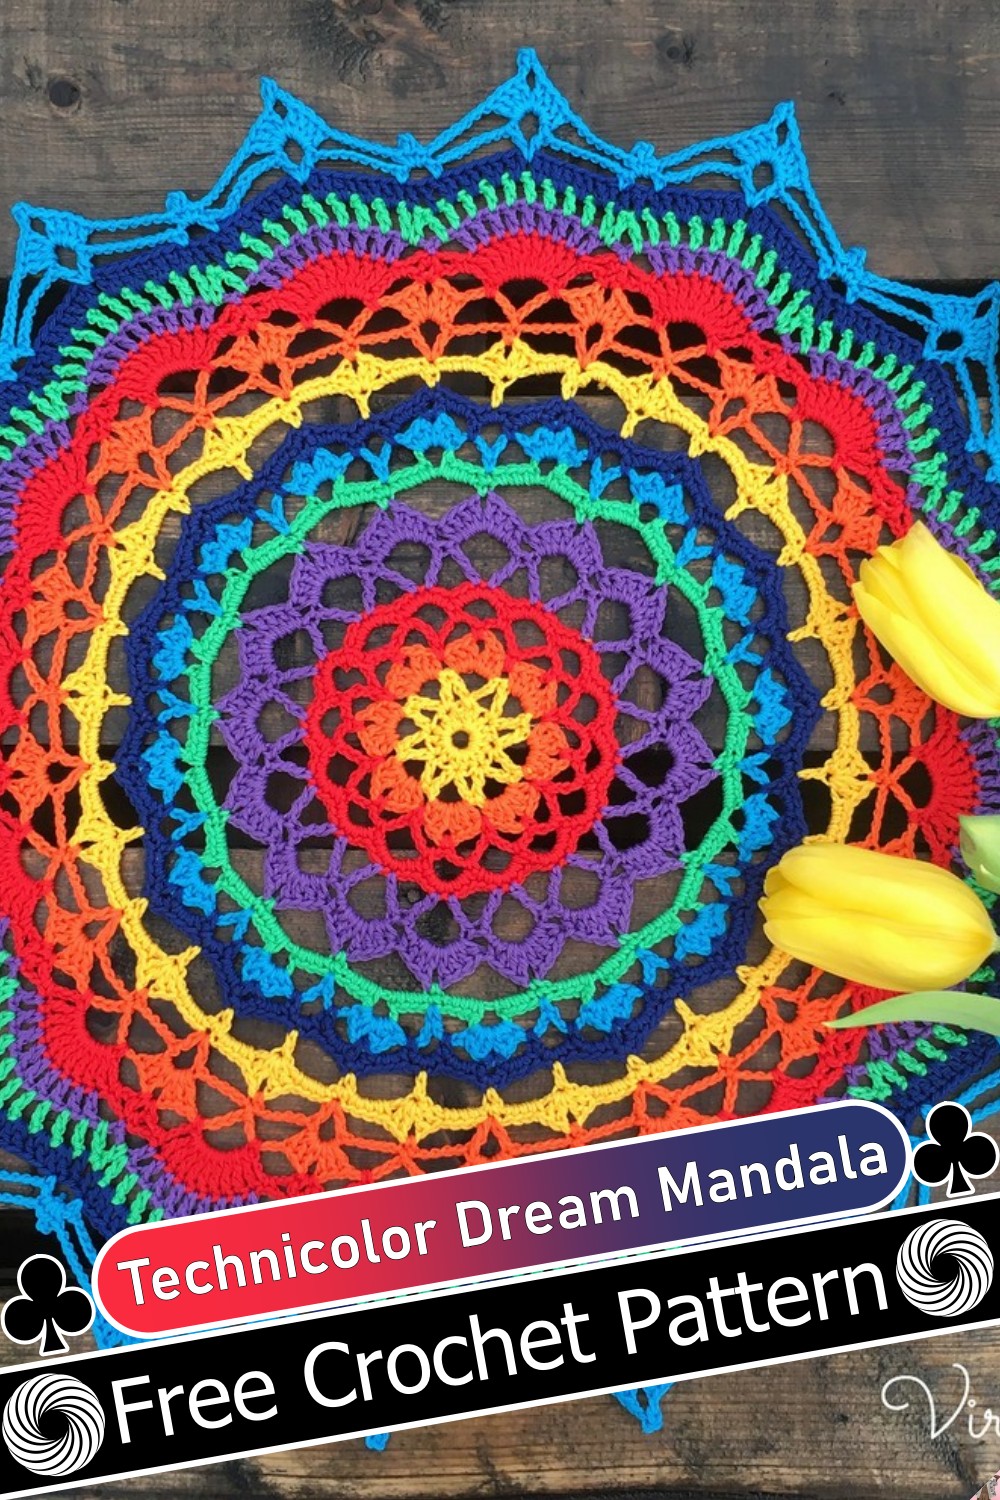 Technicolor Dream Mandala